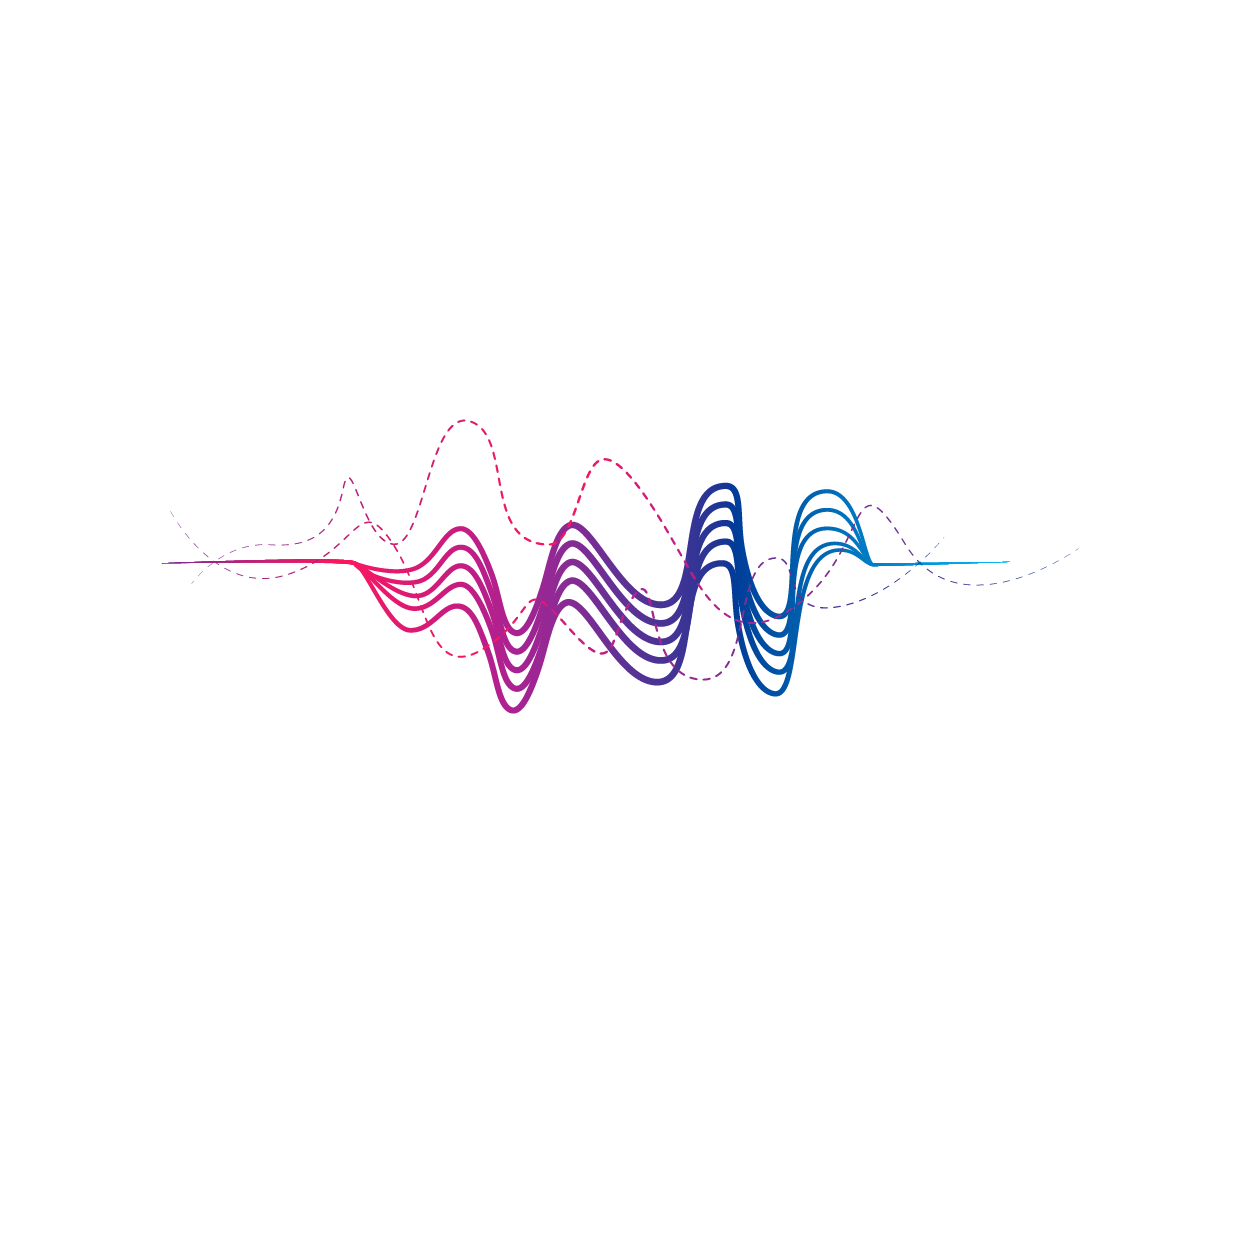 Mackwave